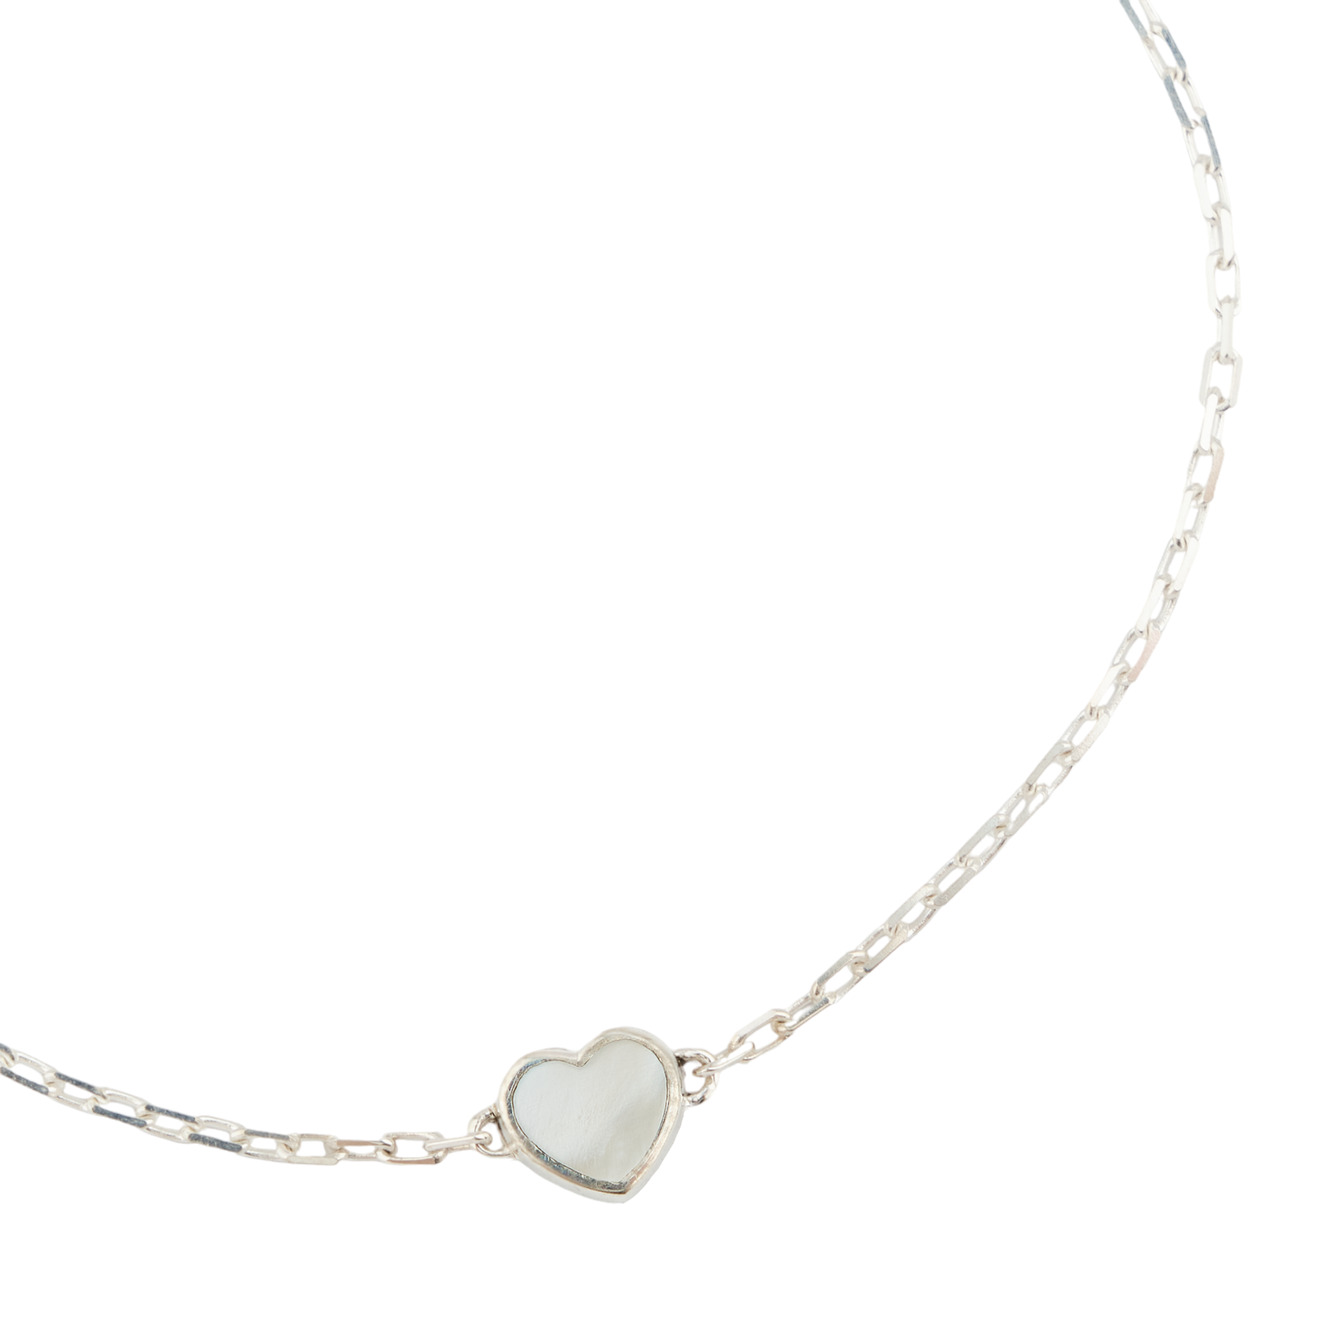 Lovelavka Браслет Stone Heart из серебра с перламутром браслет sokolov из серебра с перламутром 83050038 размер 17 см